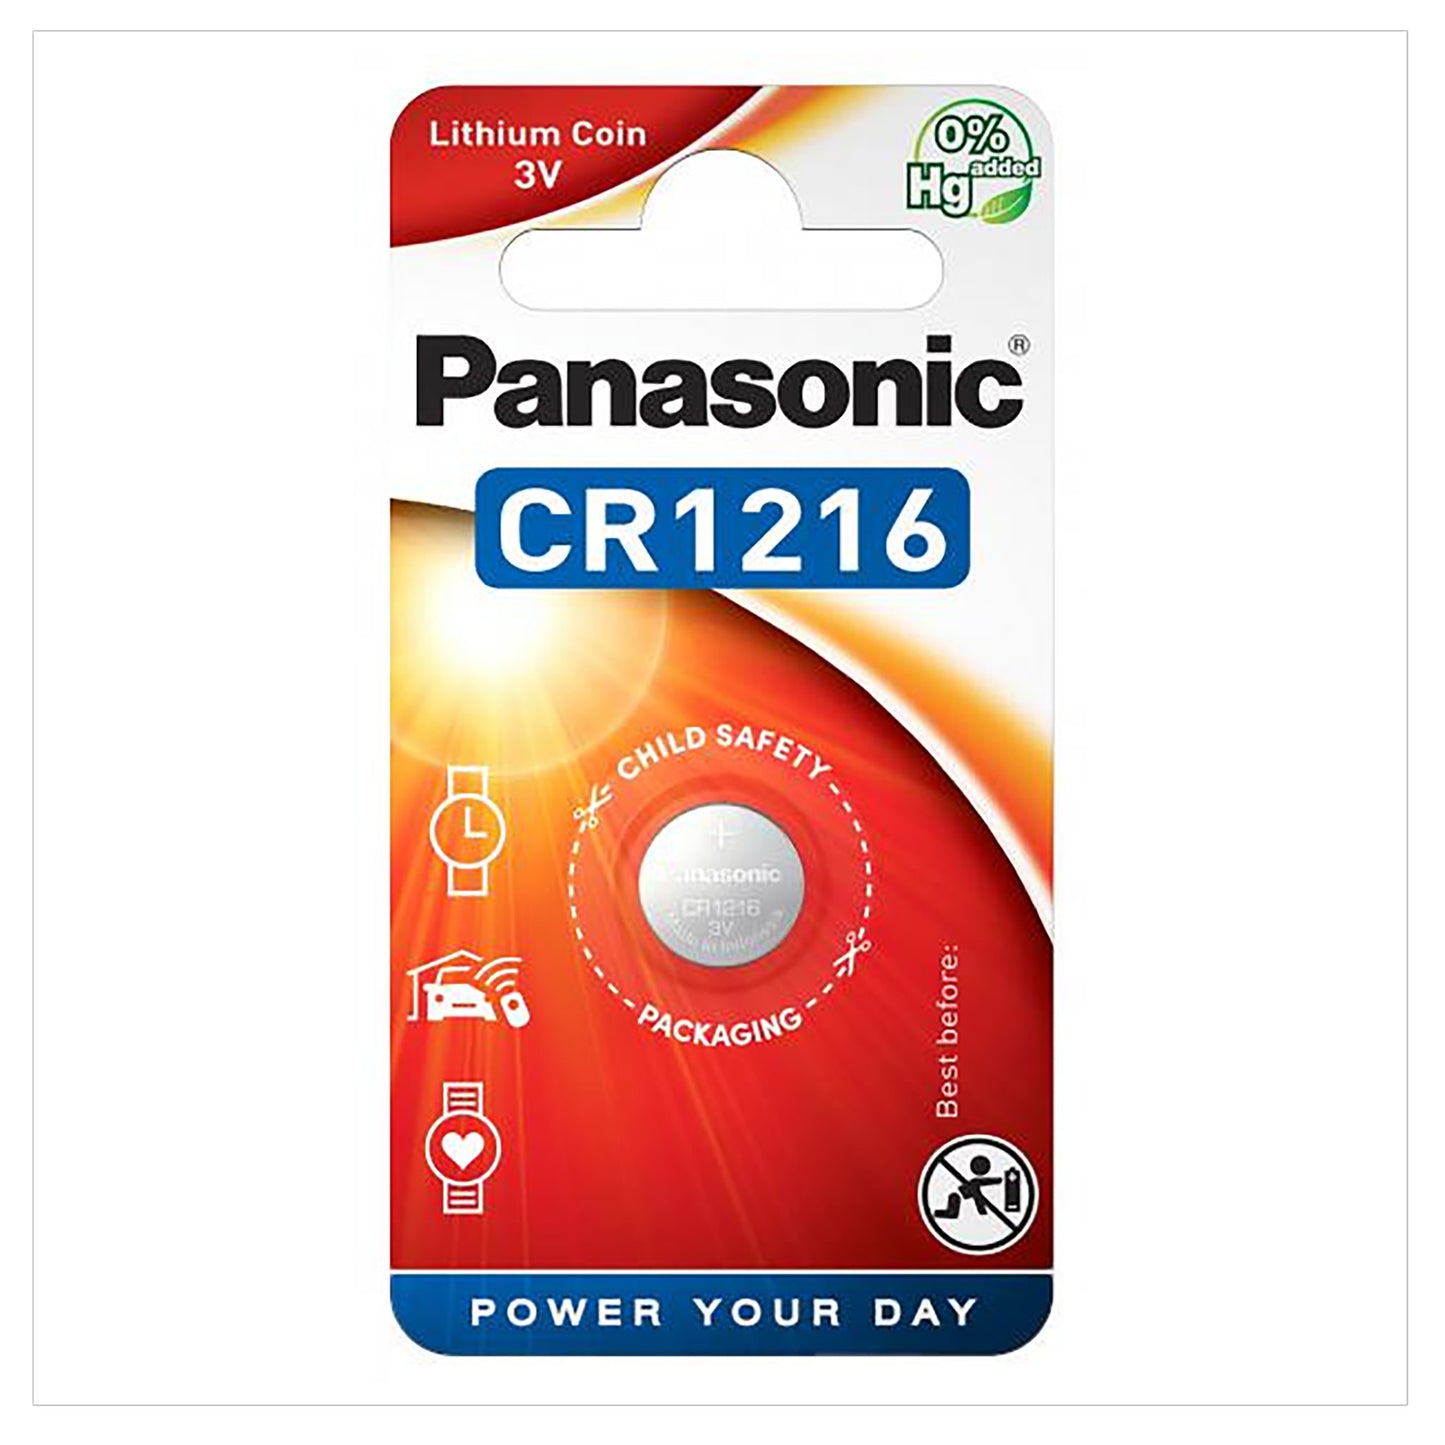 PAN-CR1216-1 - литиевая батарейка Panasonic тип CR1216 (аналог ECR1216), напряжение: 3 В (1 шт. в блистере)